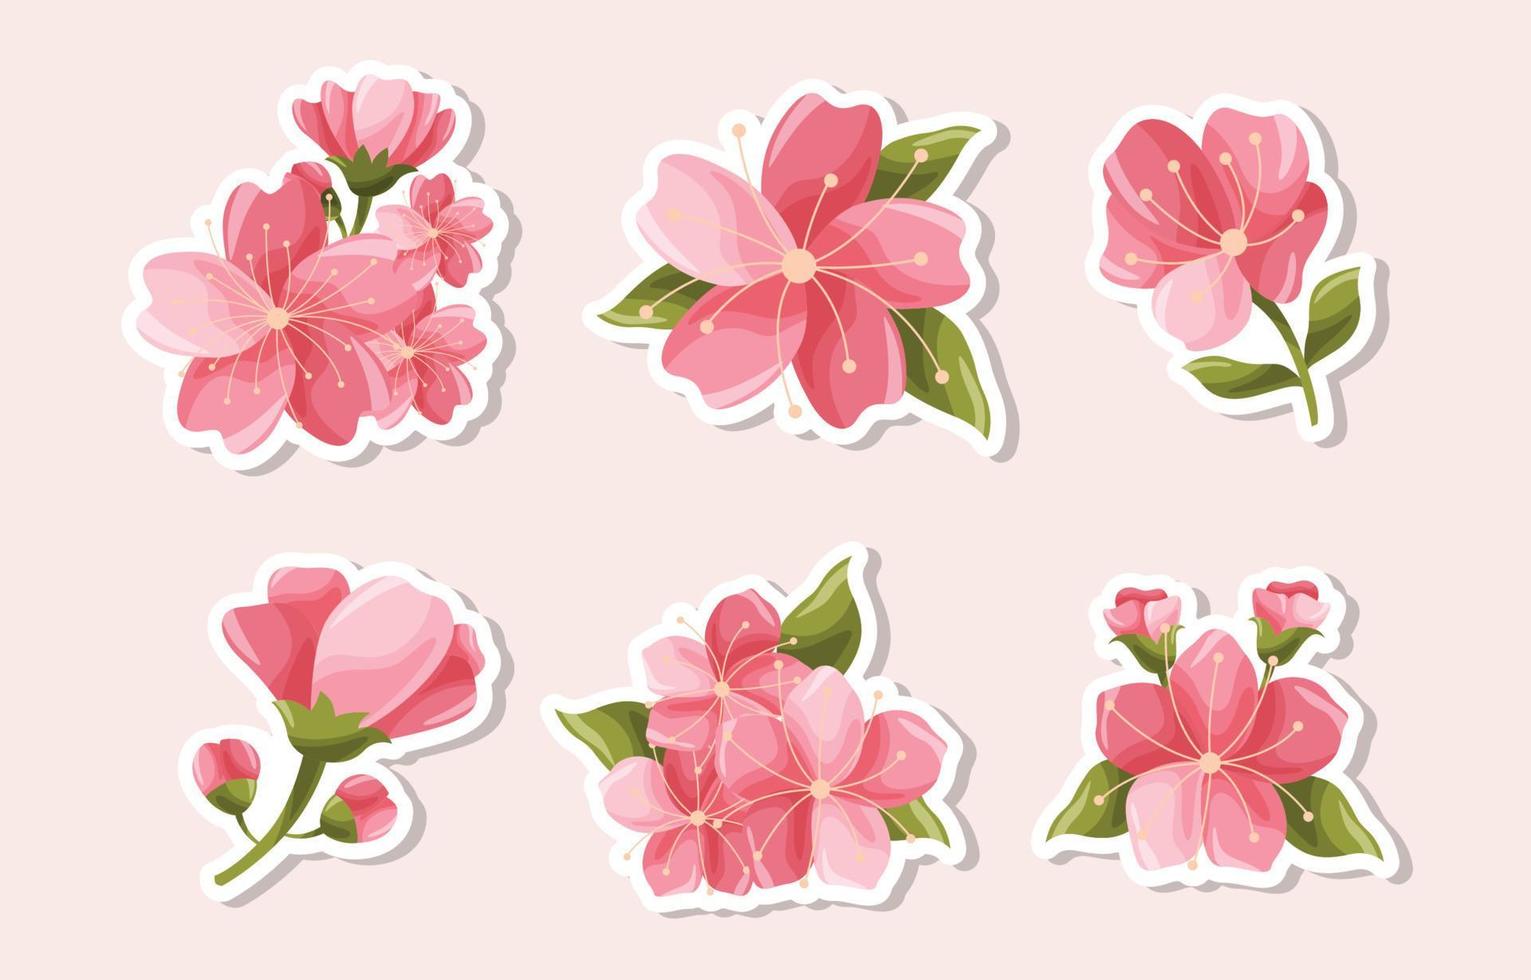 kersenbloesem schattige bloeiende bloem sticker collectie vector